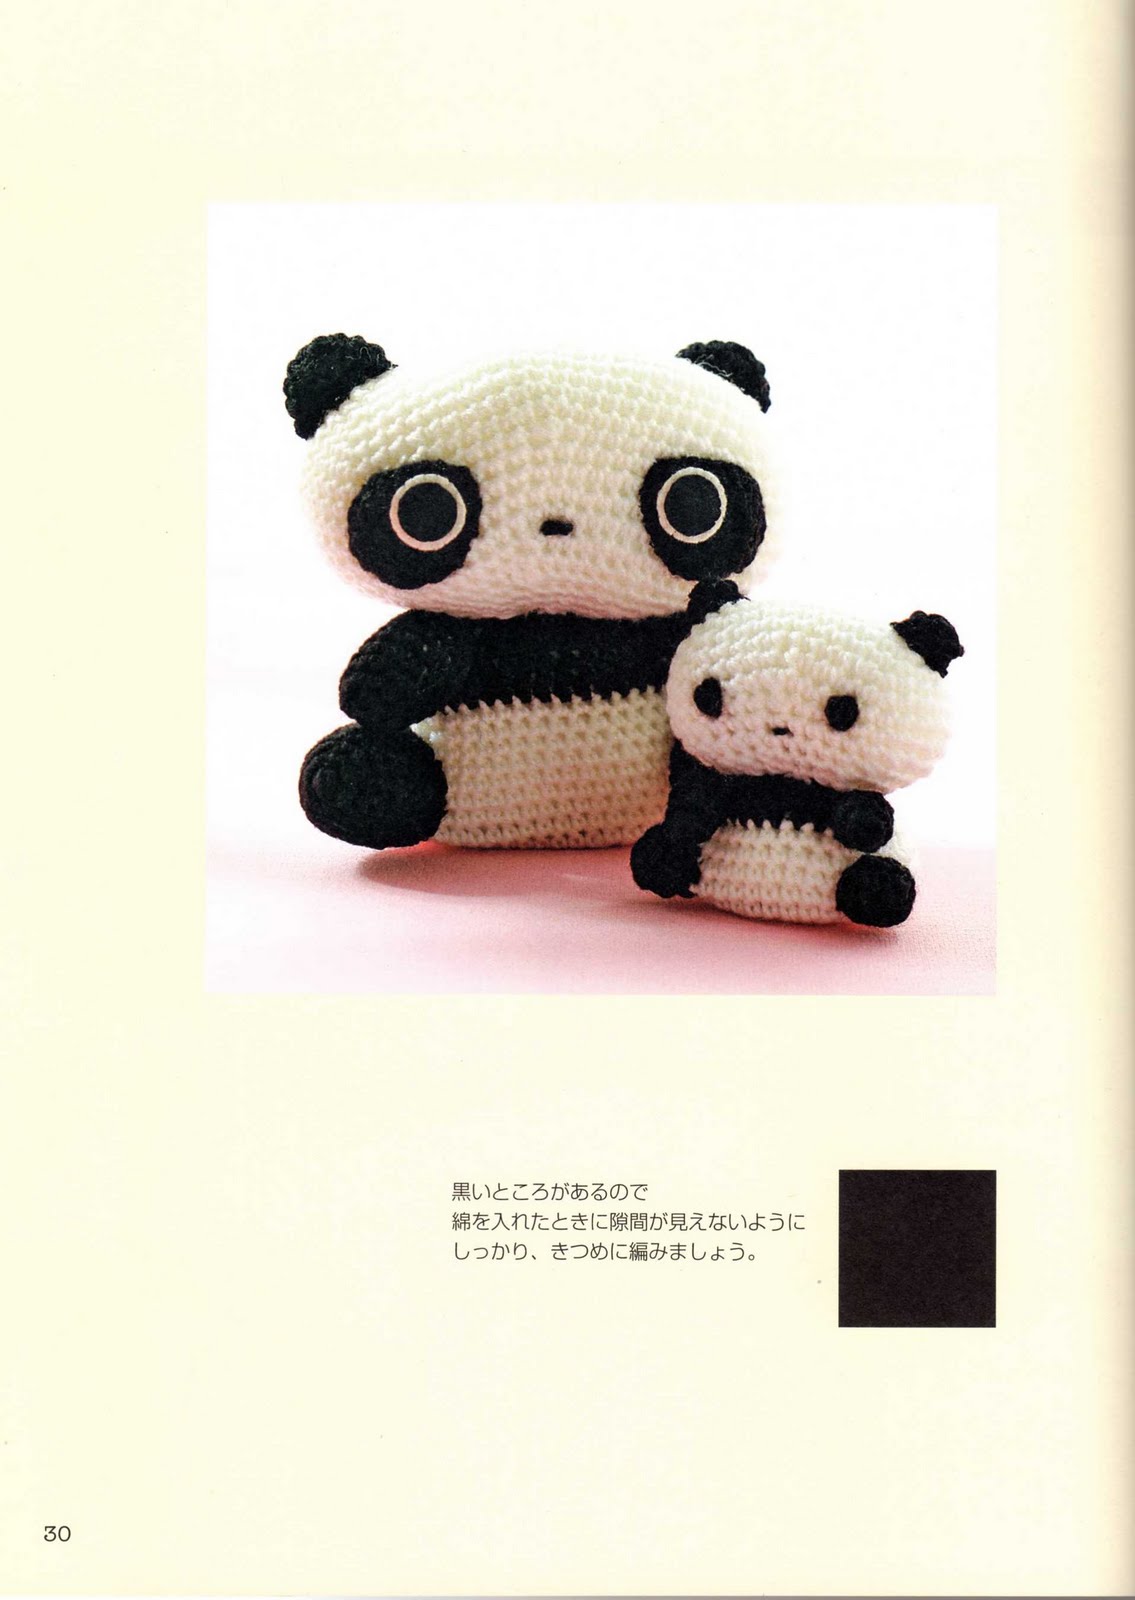 Little panda amigurumi pattern (1)